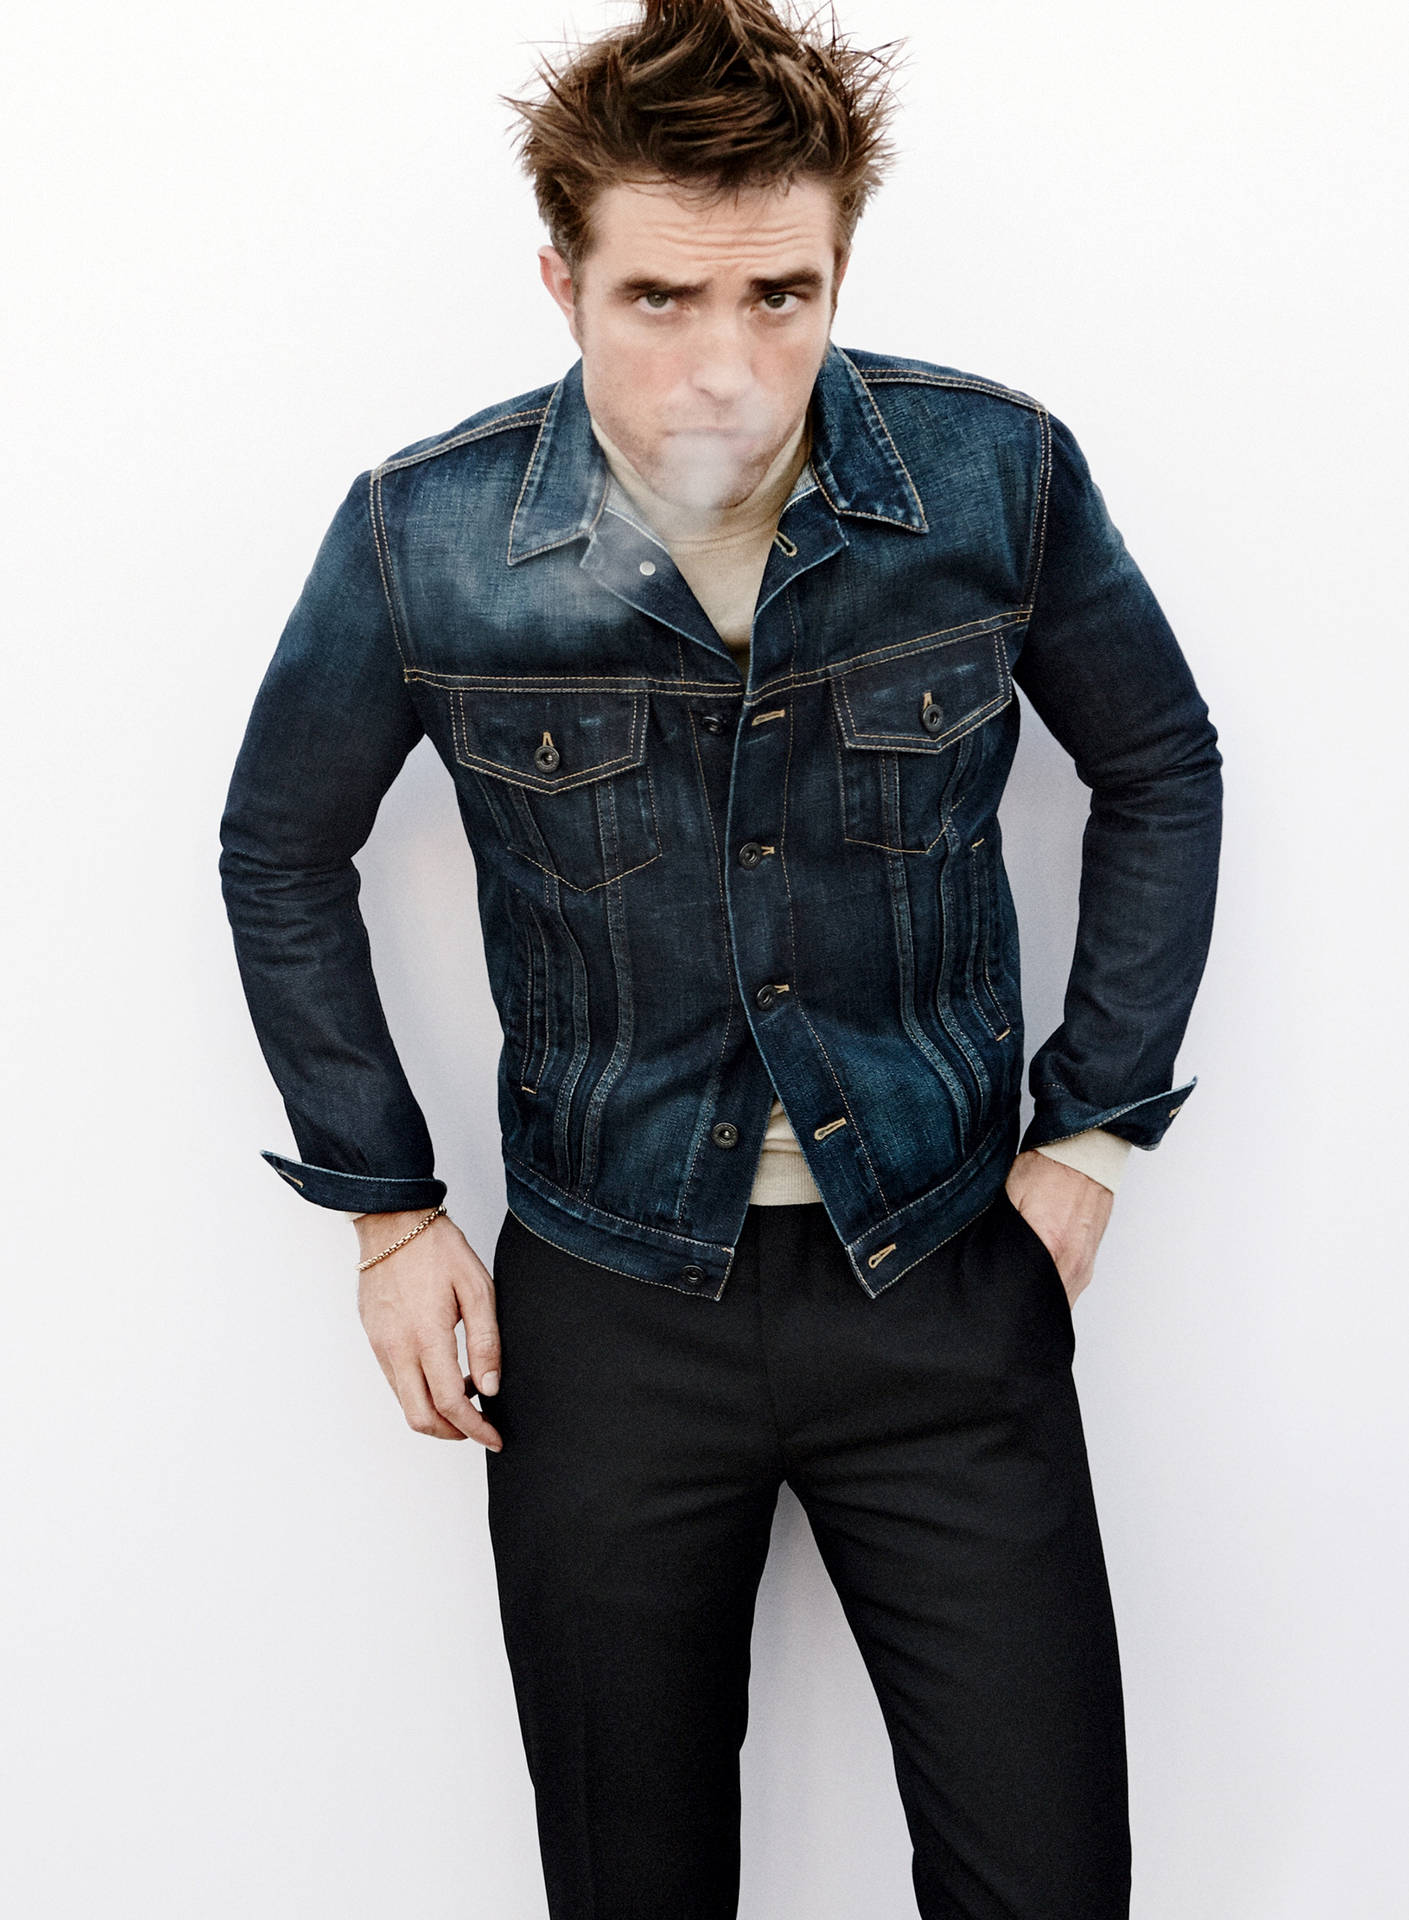 Robert Pattinson In Denim Background